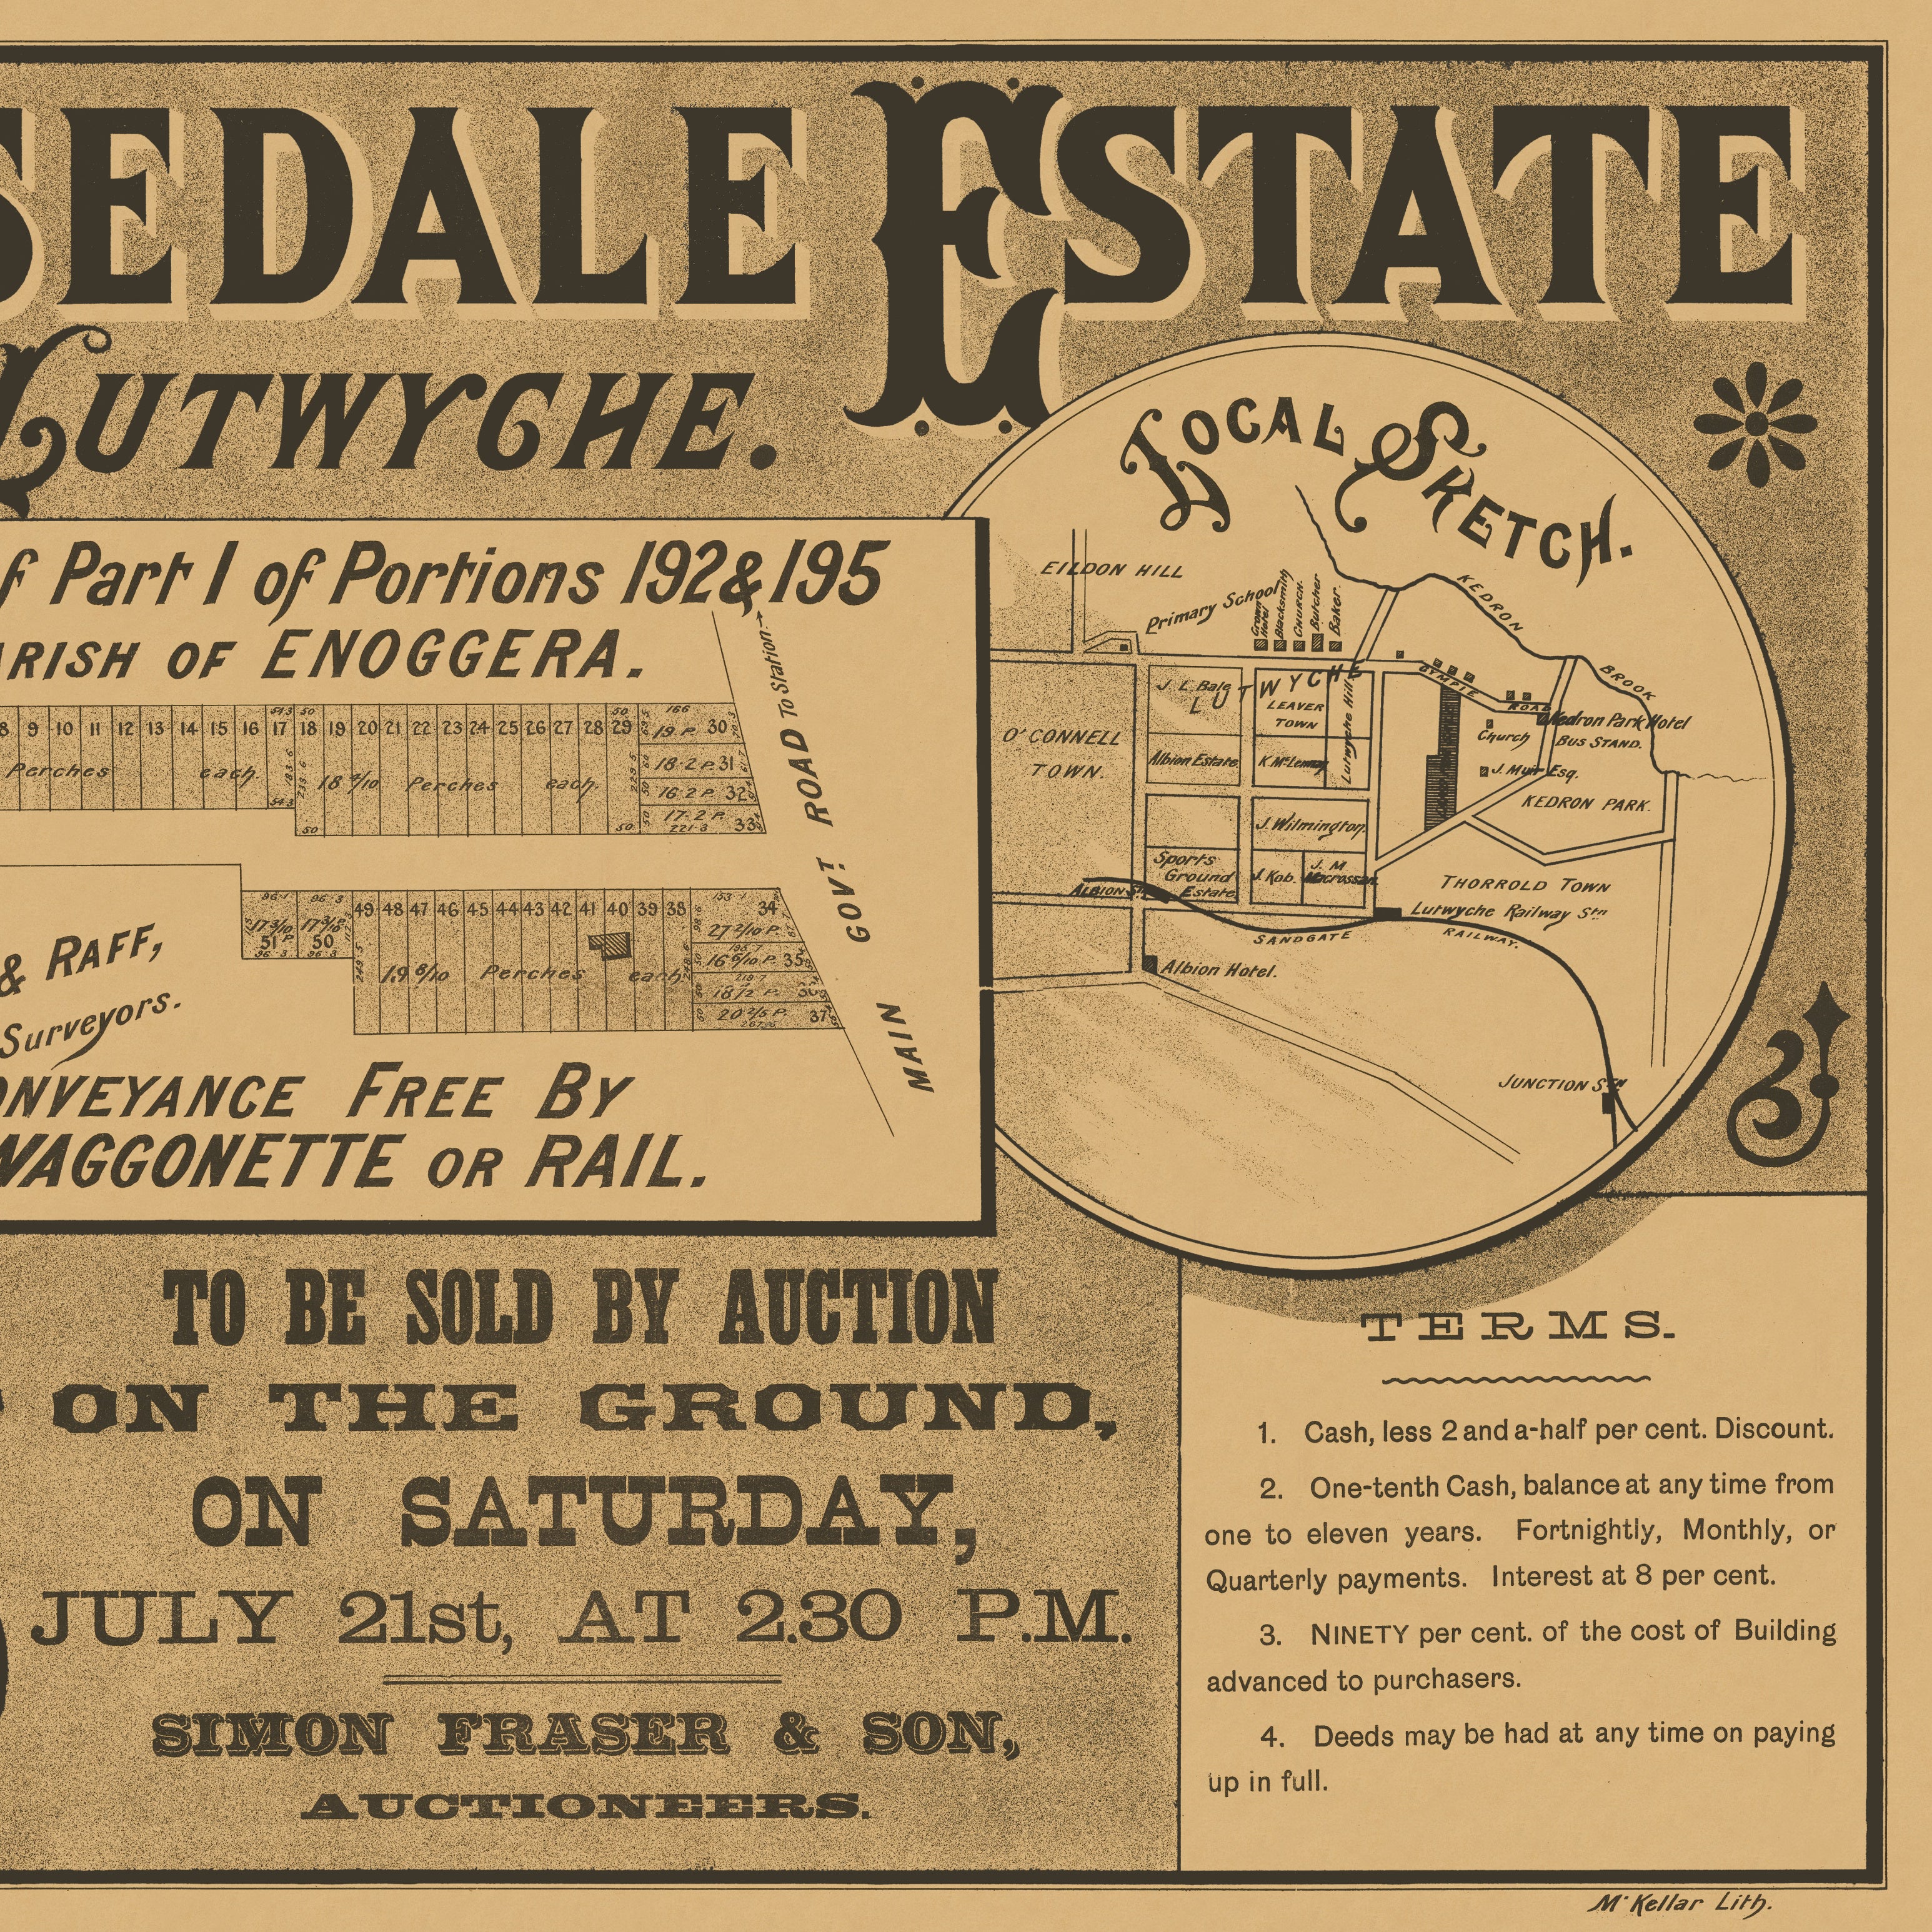 1888 Wooloowin - Isedale Estate